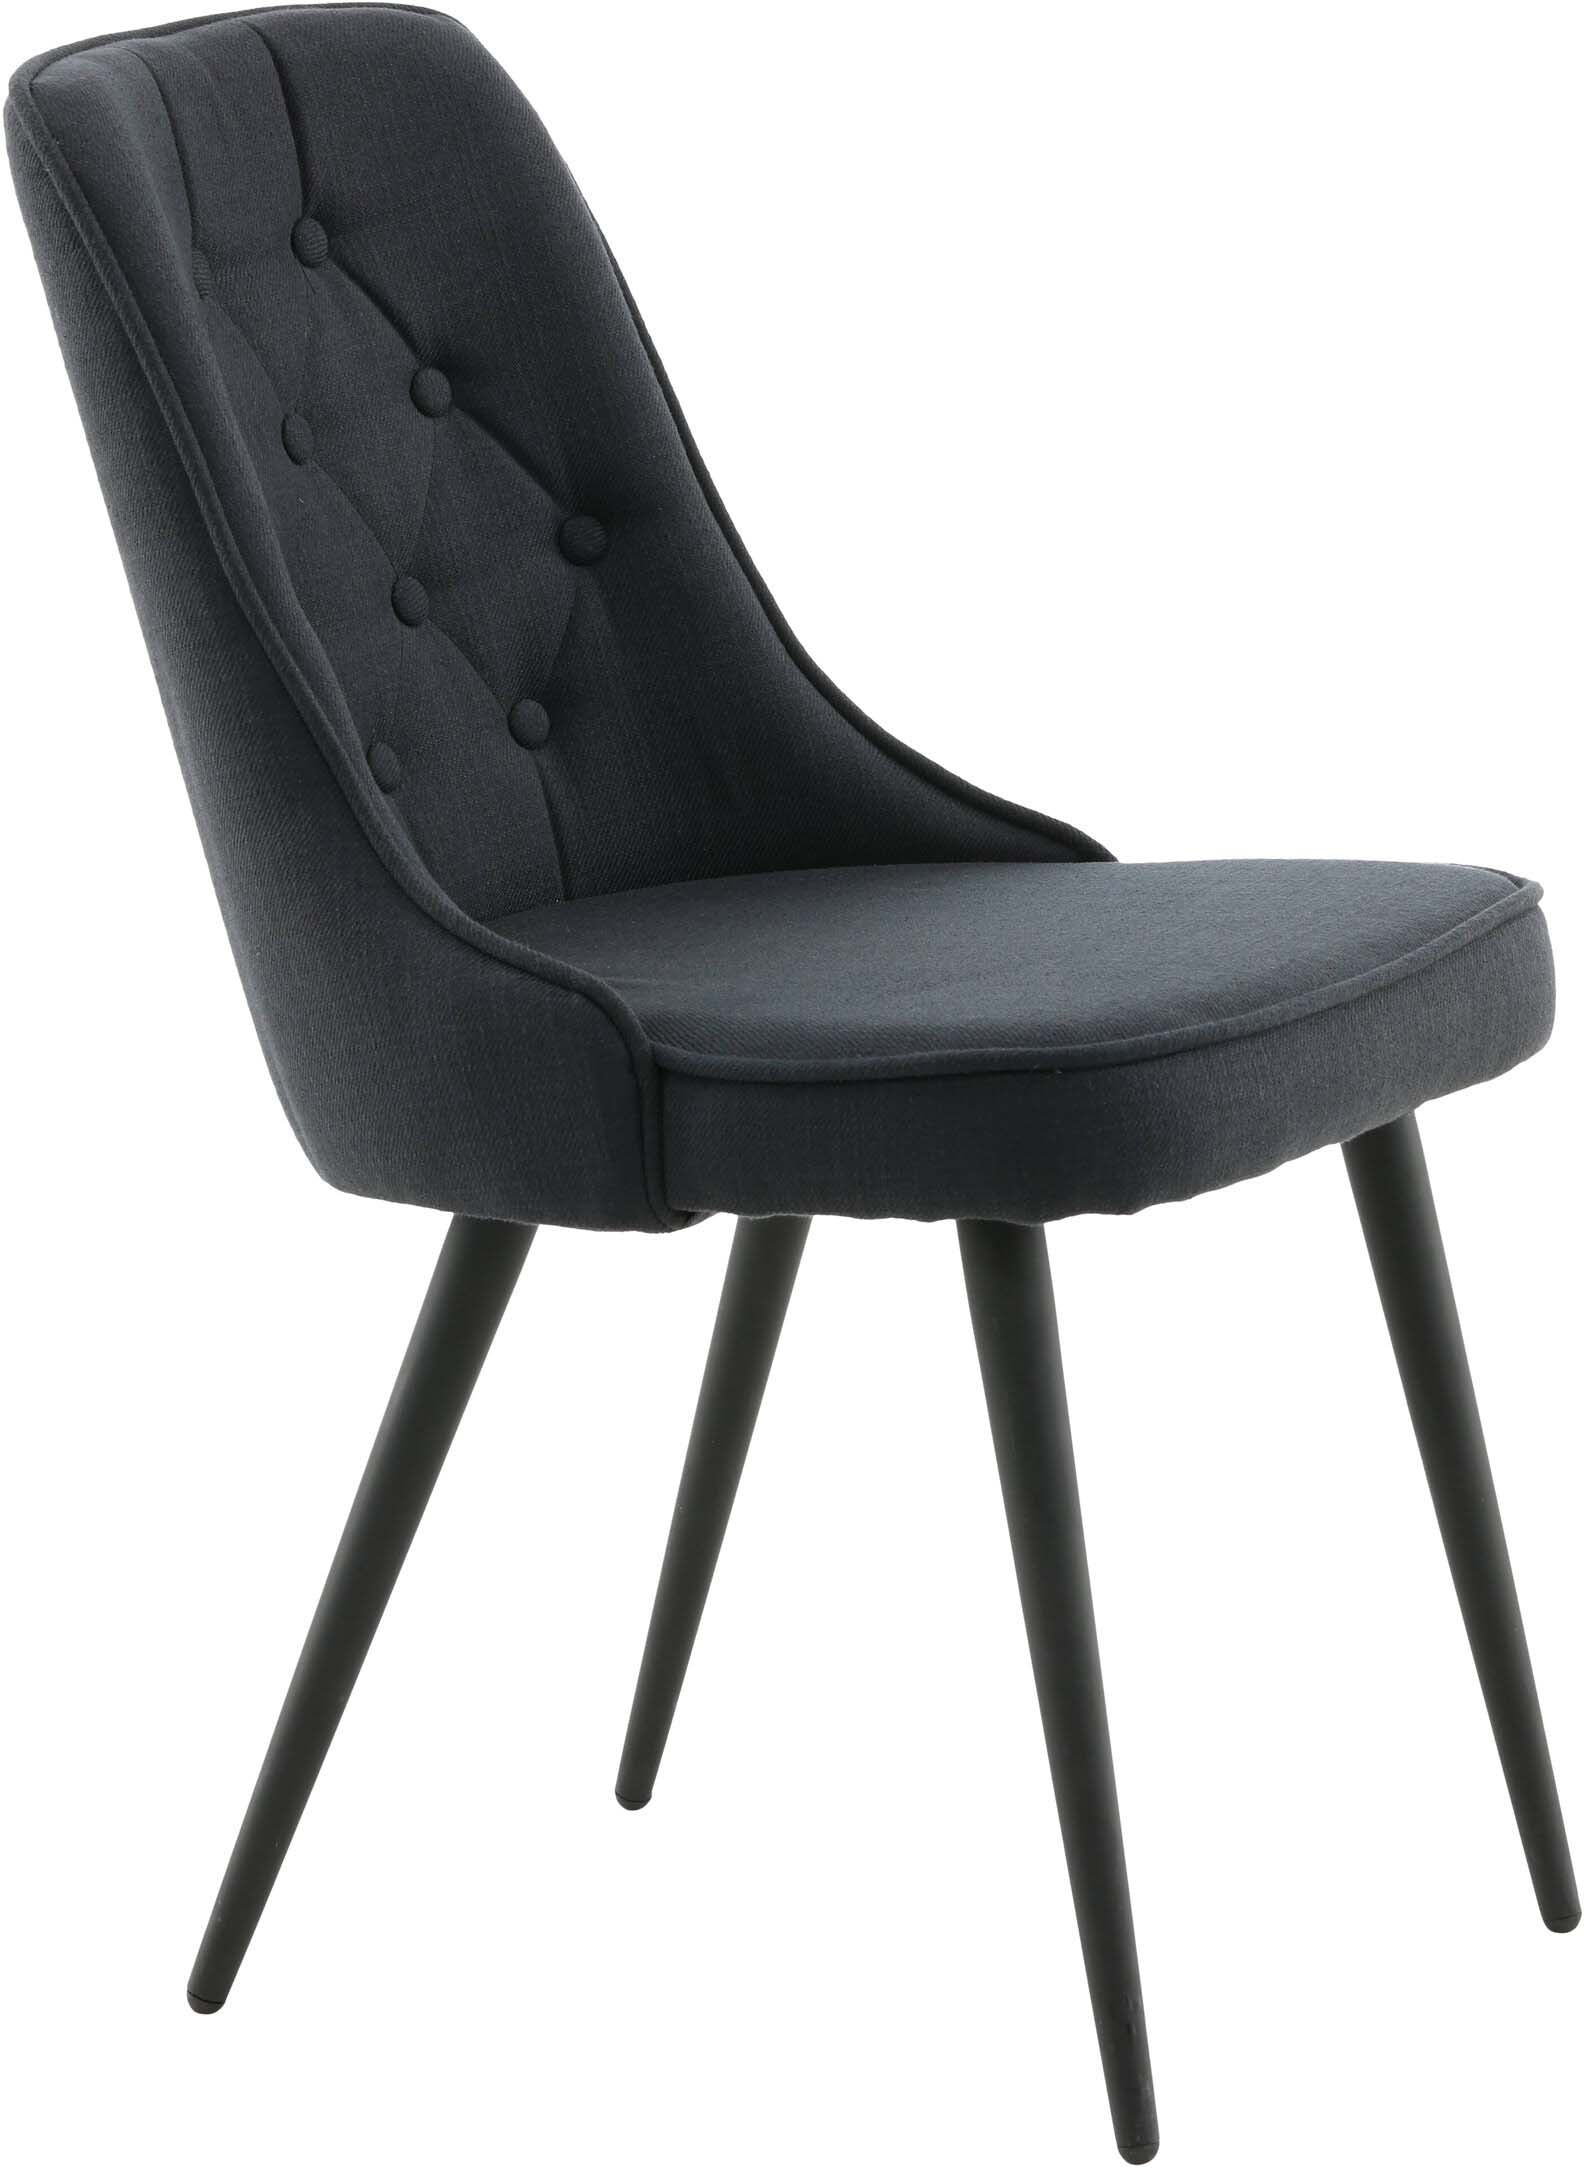 Velvet Deluxe Stuhl in Schwarz präsentiert im Onlineshop von KAQTU Design AG. Stuhl ist von Venture Home